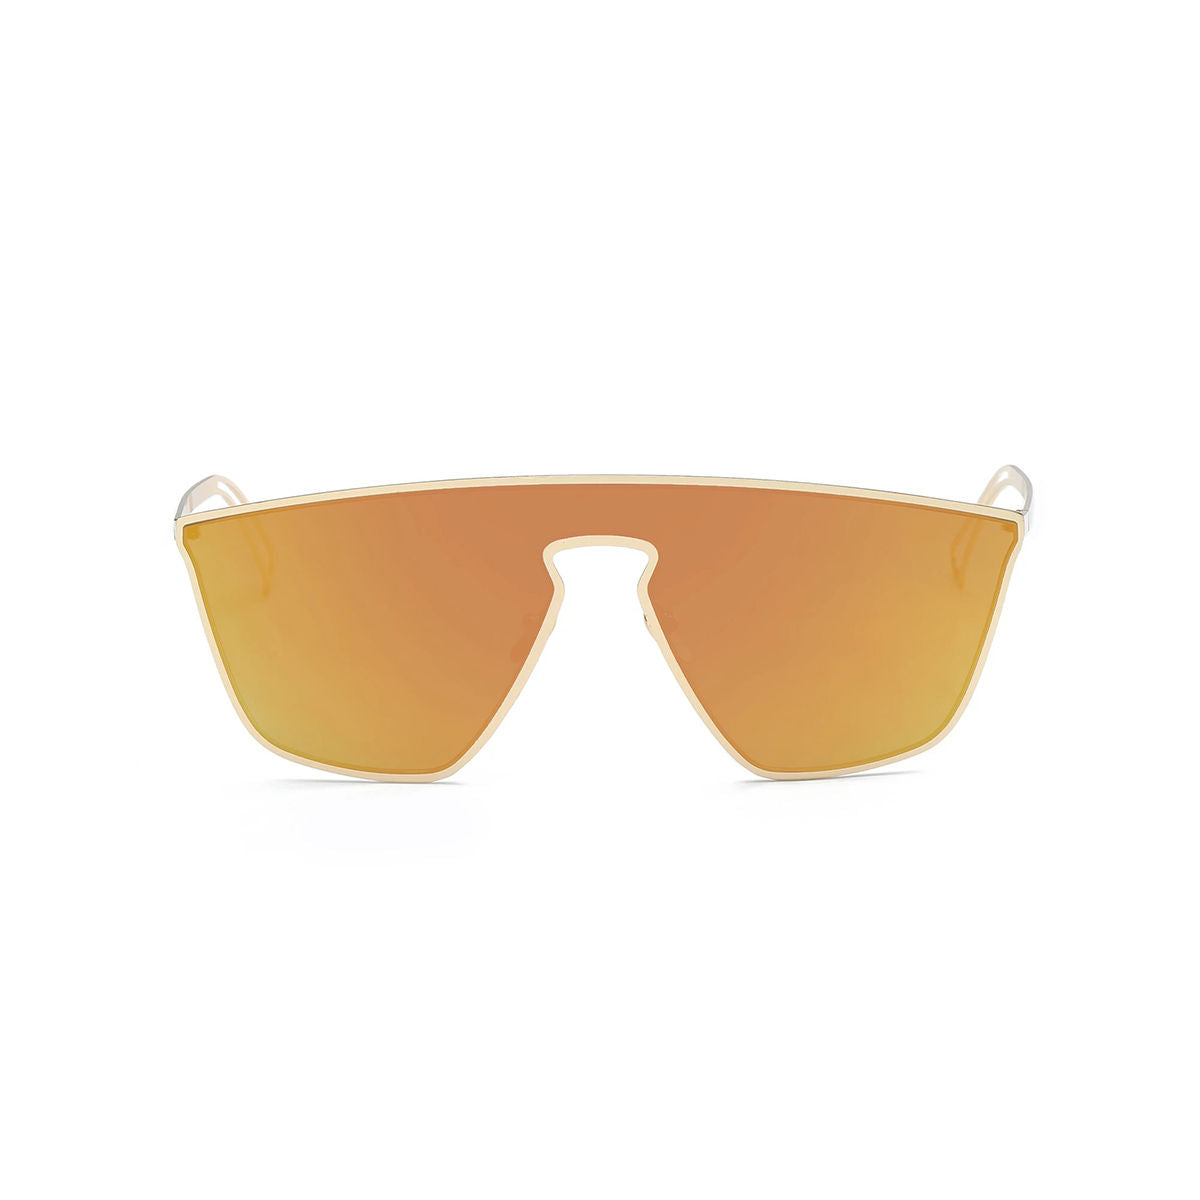 Orange Futuristic Flat Lens Sunglasses